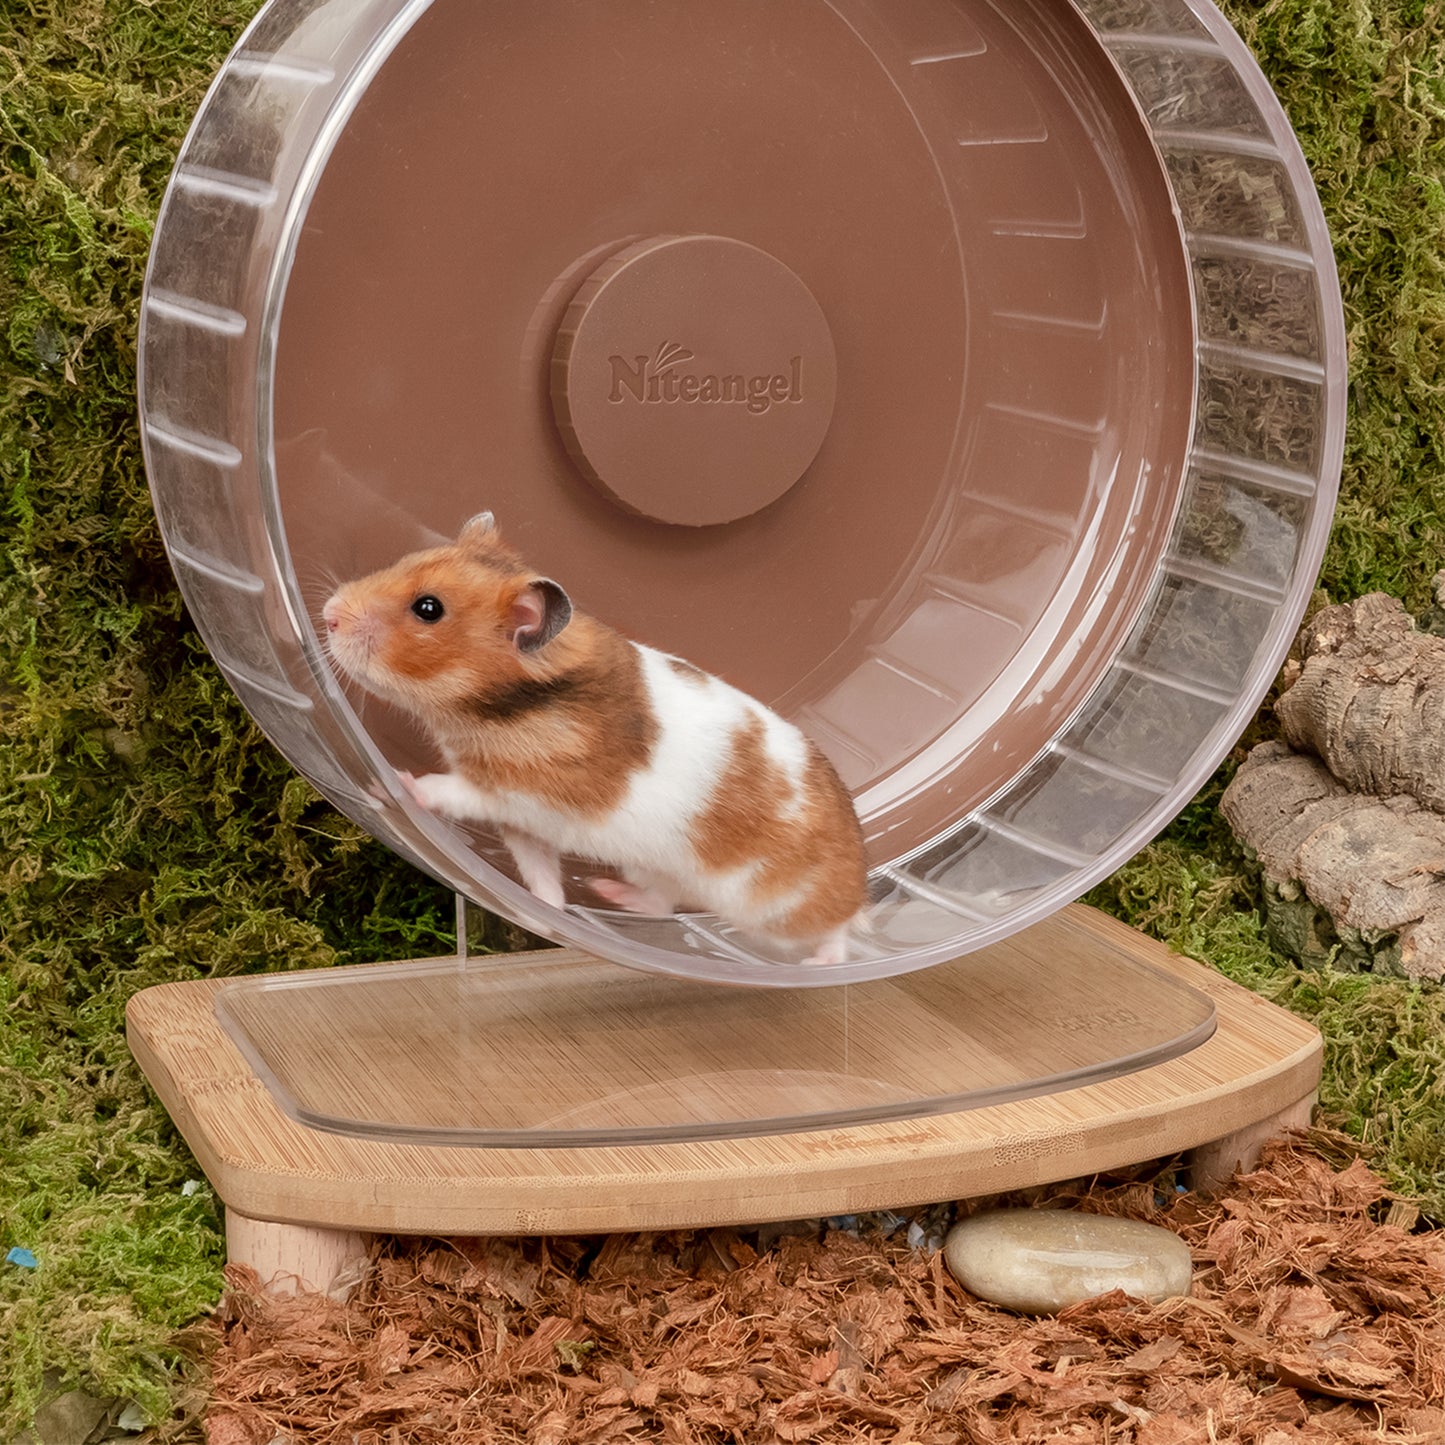 Niteangel Anti-Slide Hamster Wheel Platform